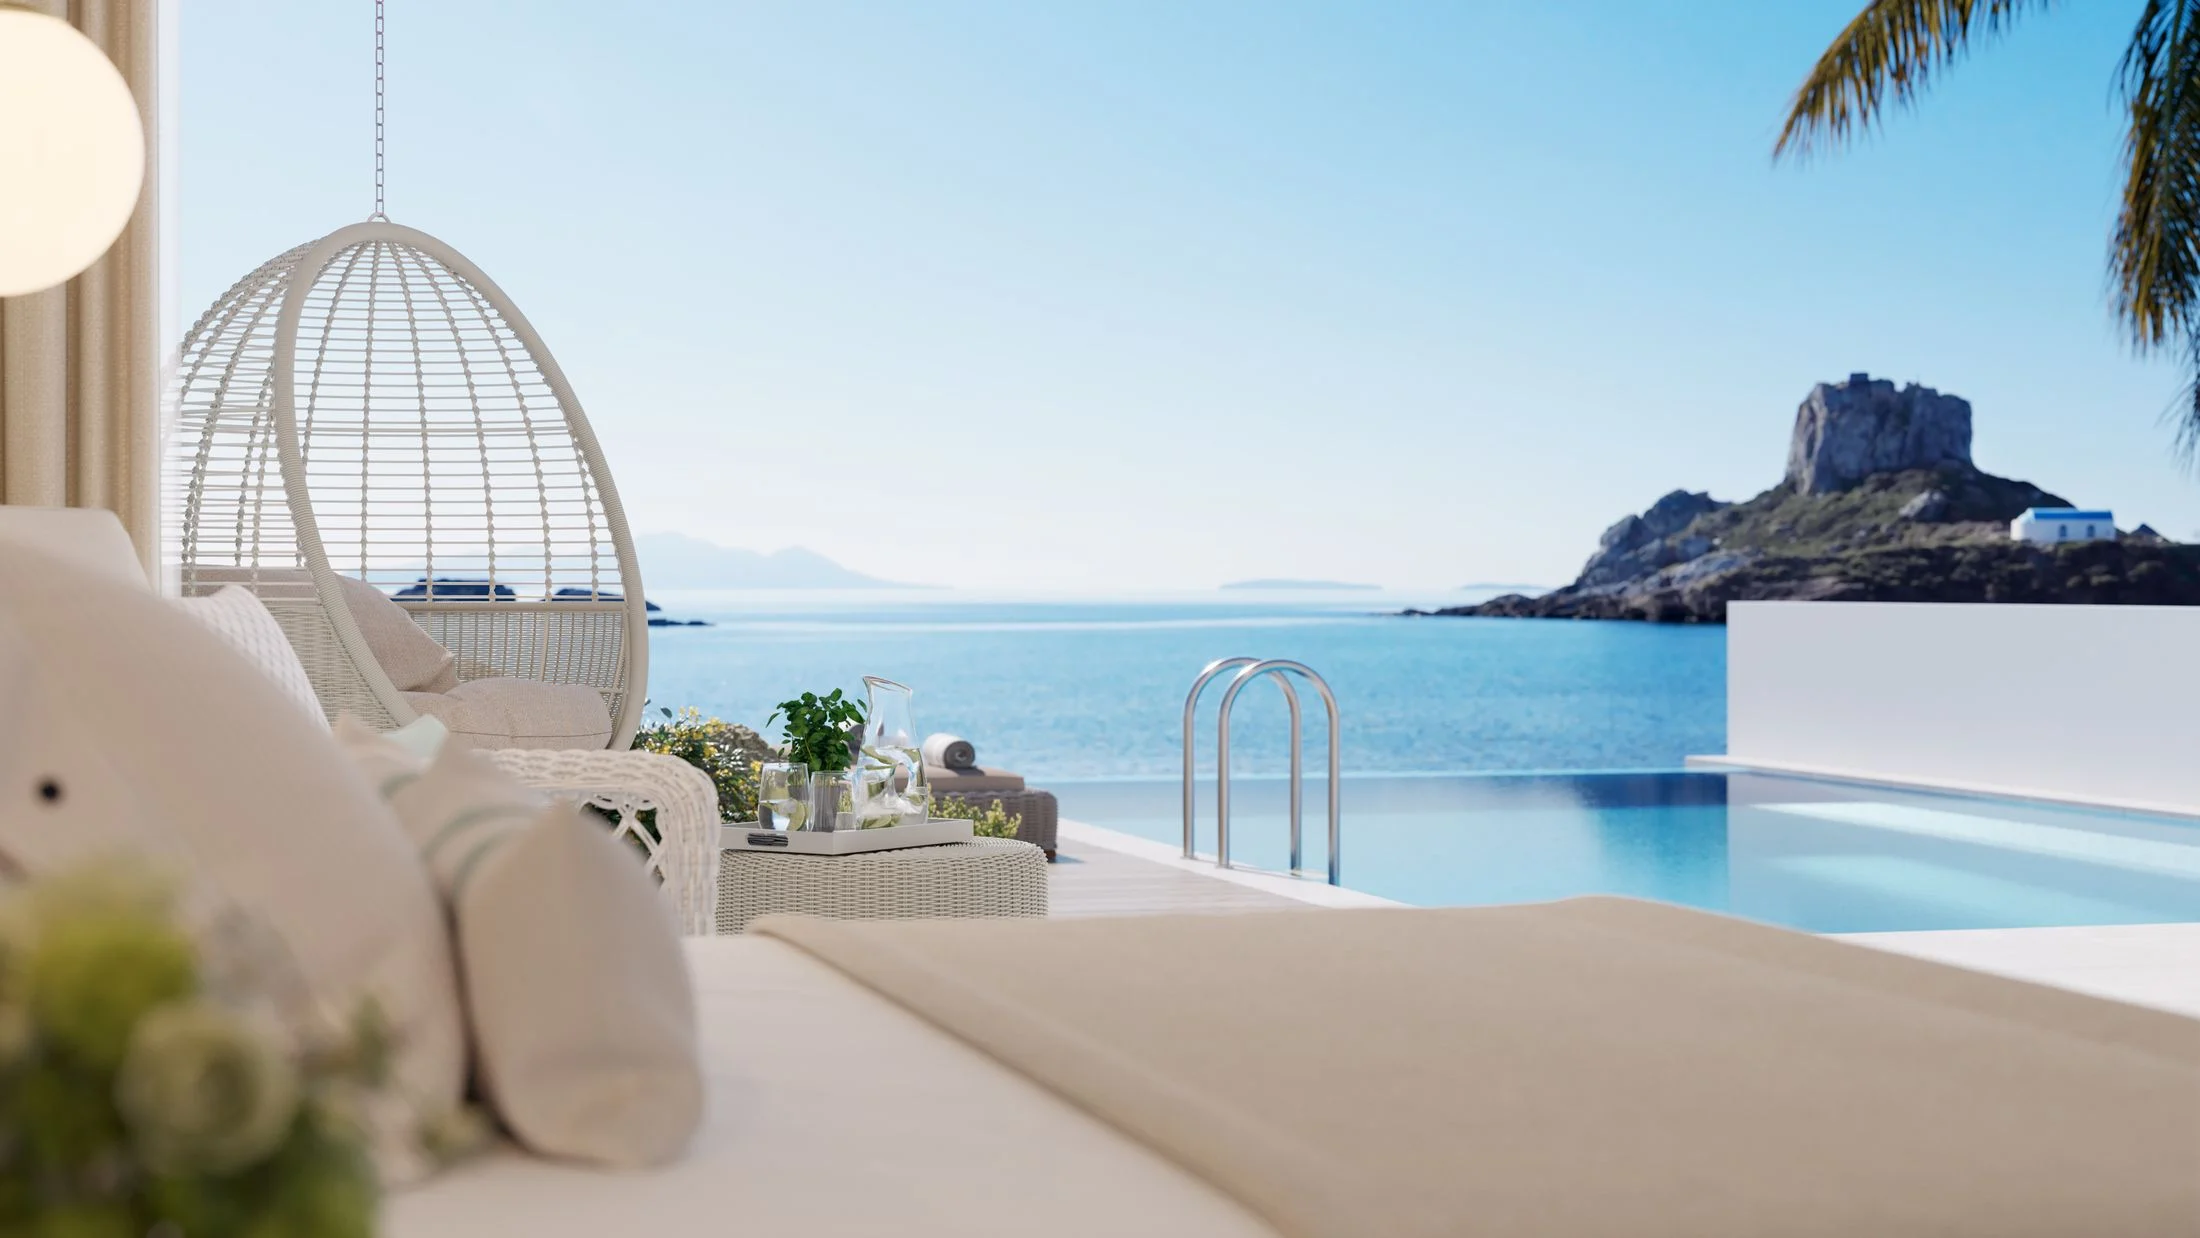 Greek hotel IKOS ranks in top 3 for top hotel 2022 TripAdvisor Awards 3